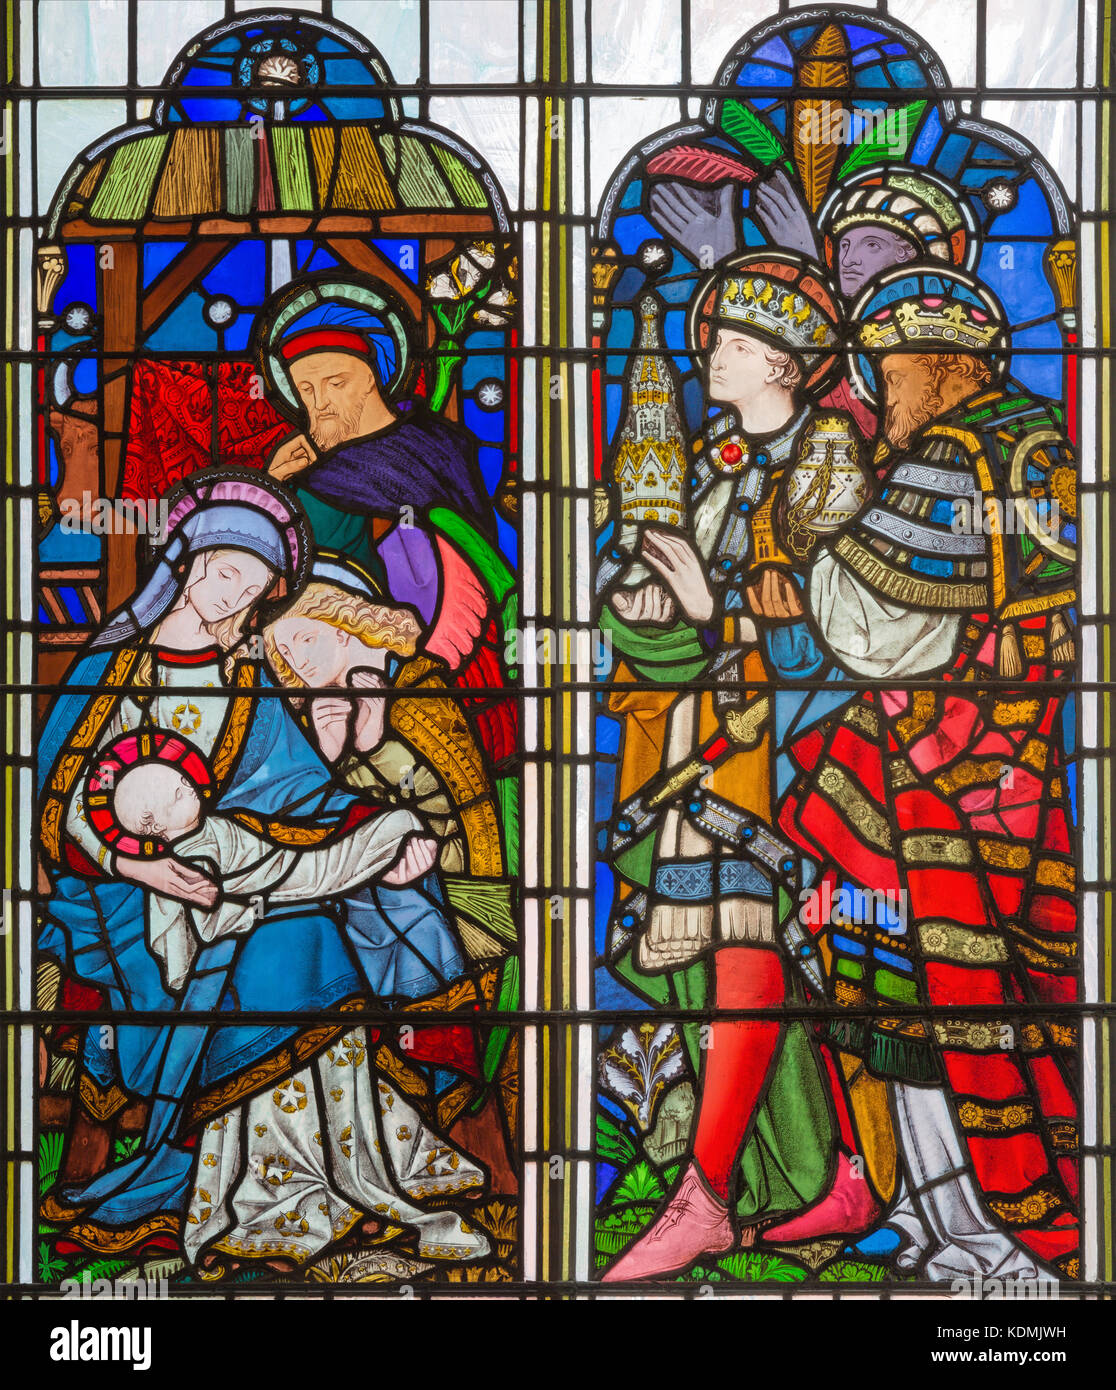 Londra, Gran Bretagna - 14 settembre 2017: l'Adorazione dei magi sul vetro macchiato nella chiesa di st. Michael cornhill di Clayton e campana. Foto Stock